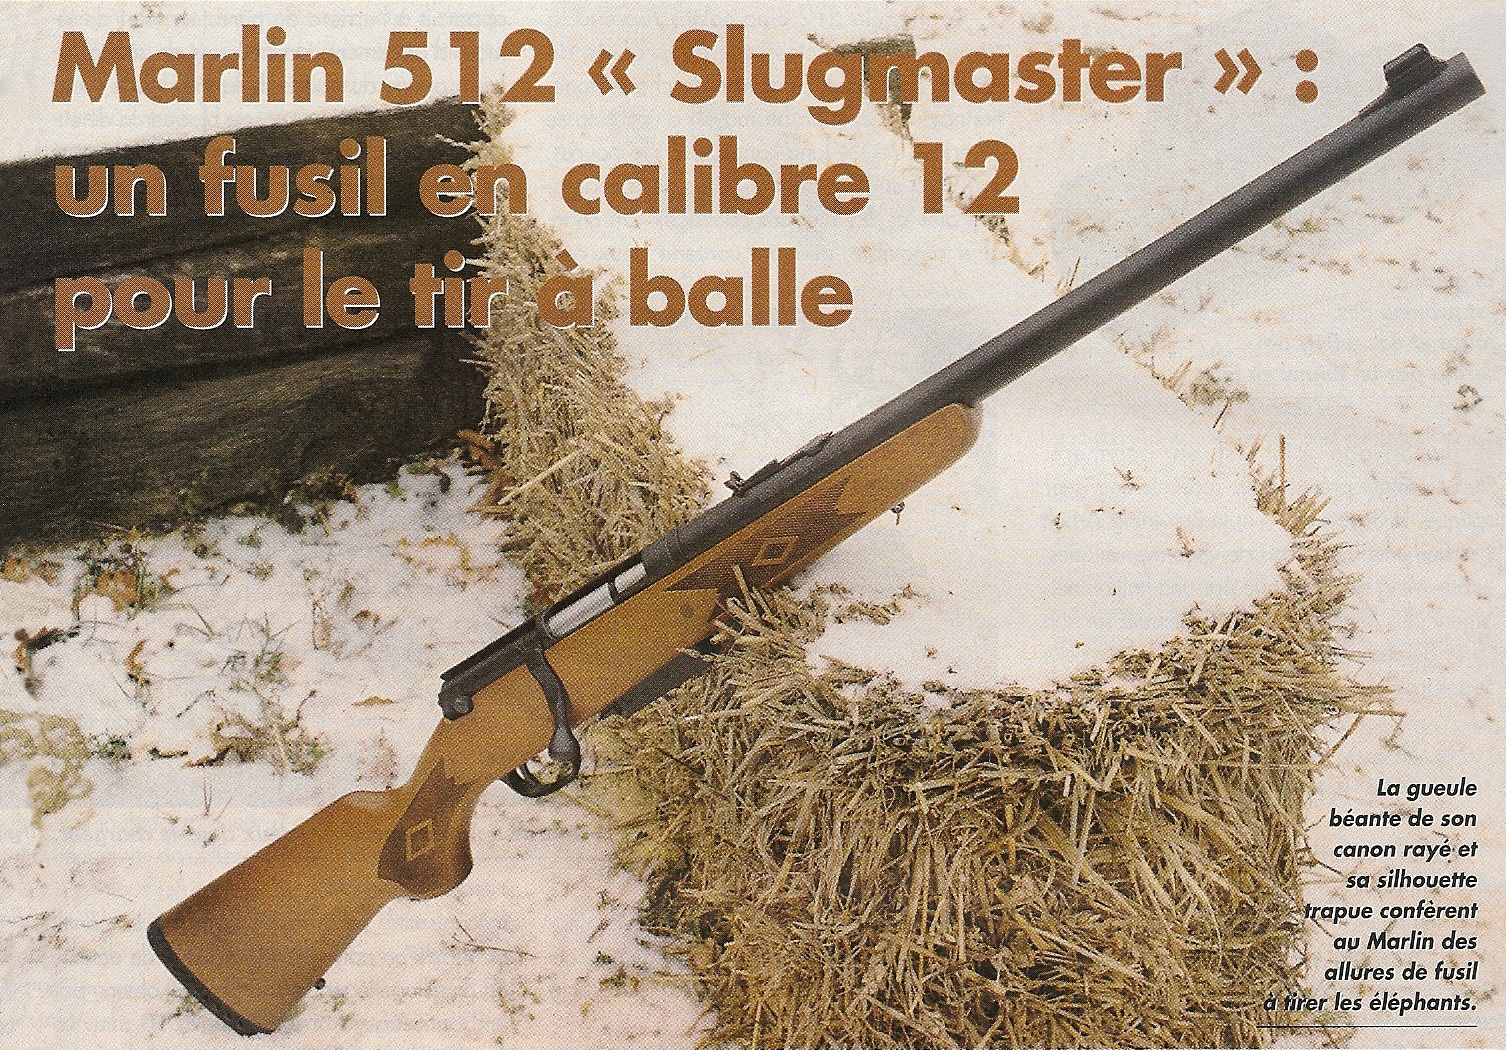 Essentiellement destinée au tir à balles en calibre 12, le Slugmaster est muni d'un canon rayé et d'une hausse réglable. Grâce à son poids assez conséquent et à la présence d'une épaisse plaque de couche en caoutchouc, il n'offre pas un trop violent recul, même lors du tir des balles les plus lourdes.